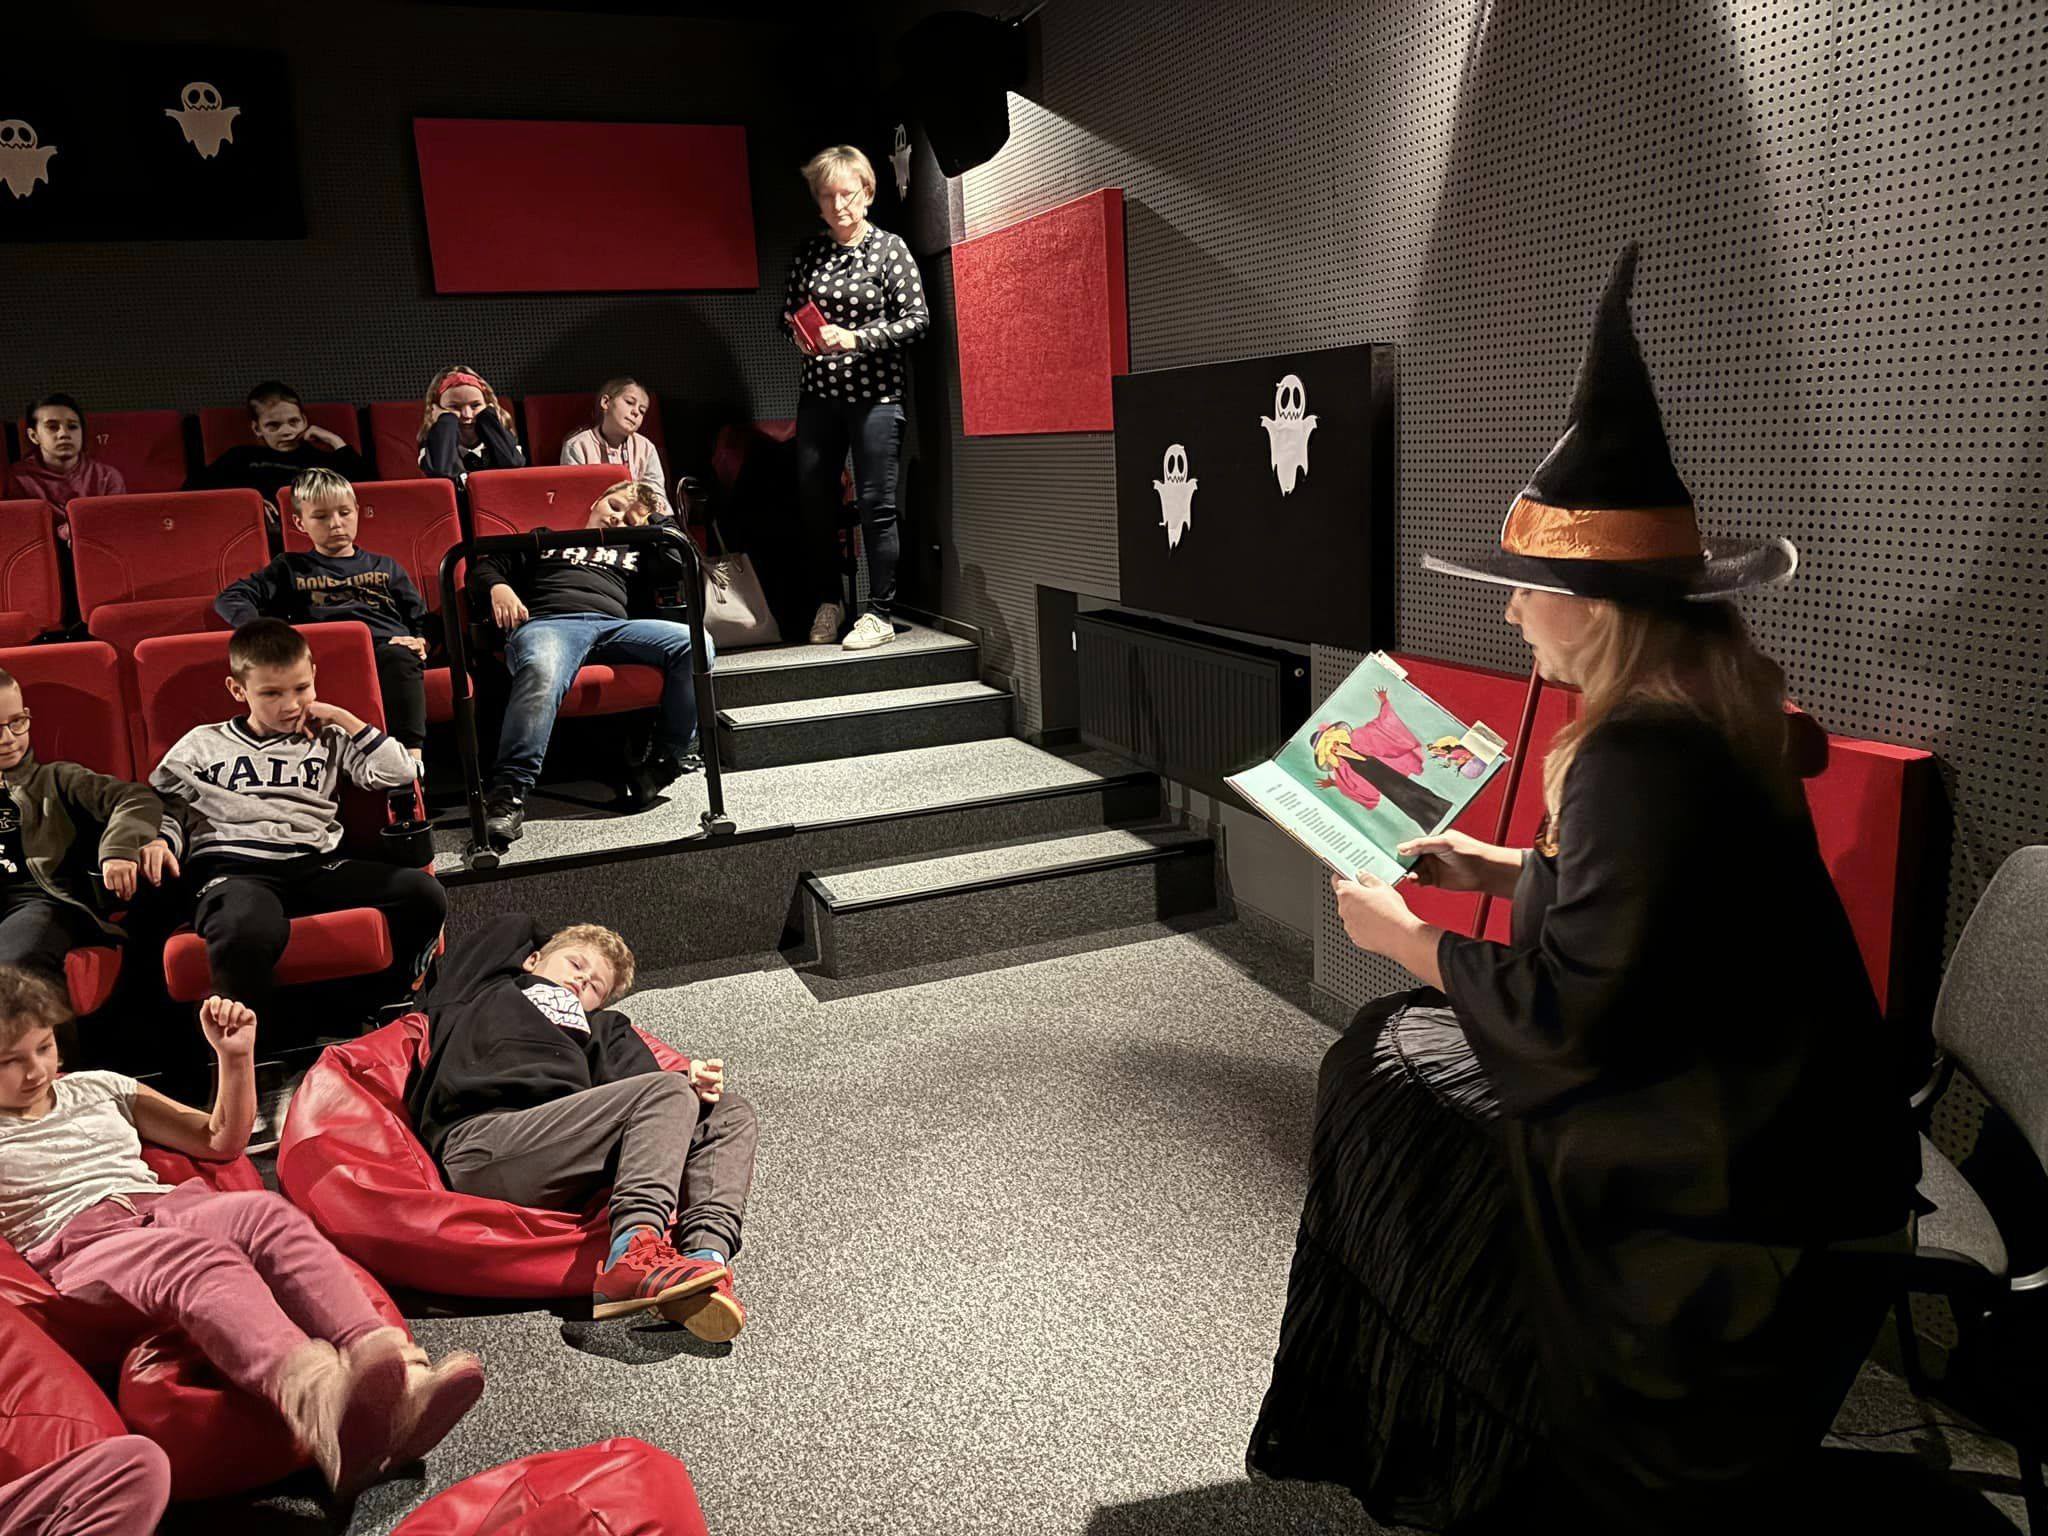 Bibliotekarka przebrana za Babę jagę czyta dzieciom bajkę w sali kinowej.